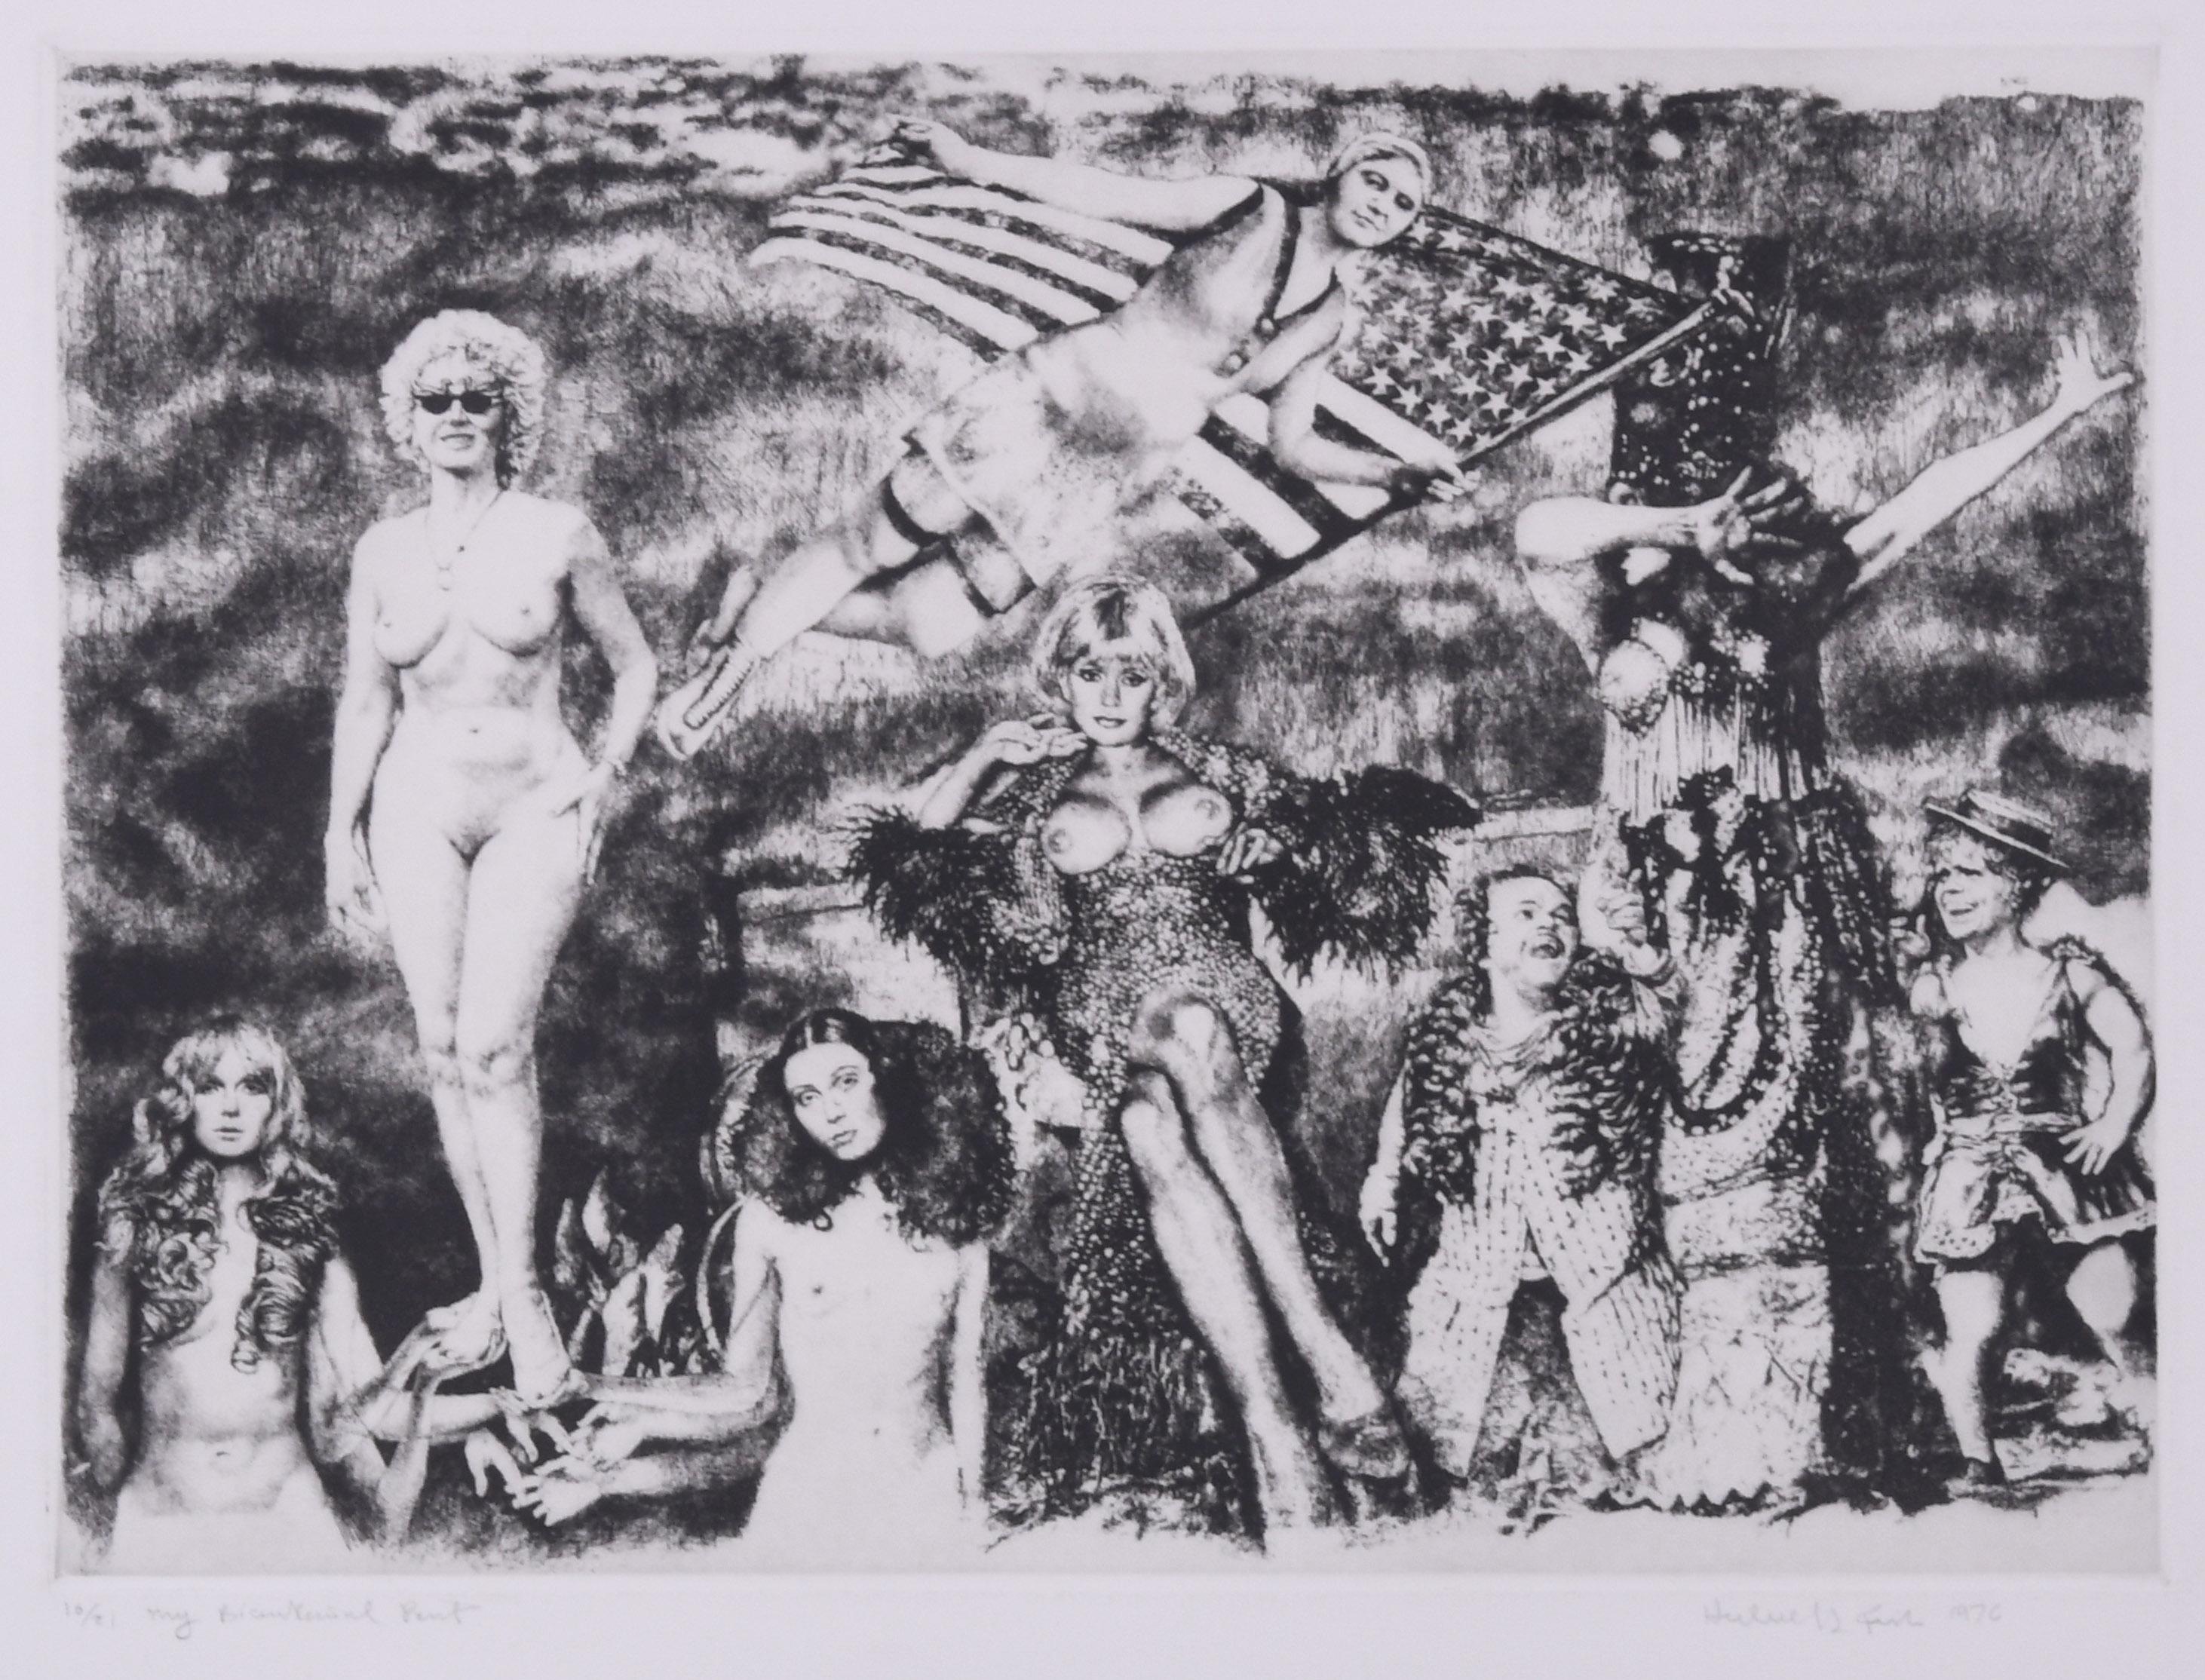 Herbert L. Fink Nude Print - My Bicentennial Print